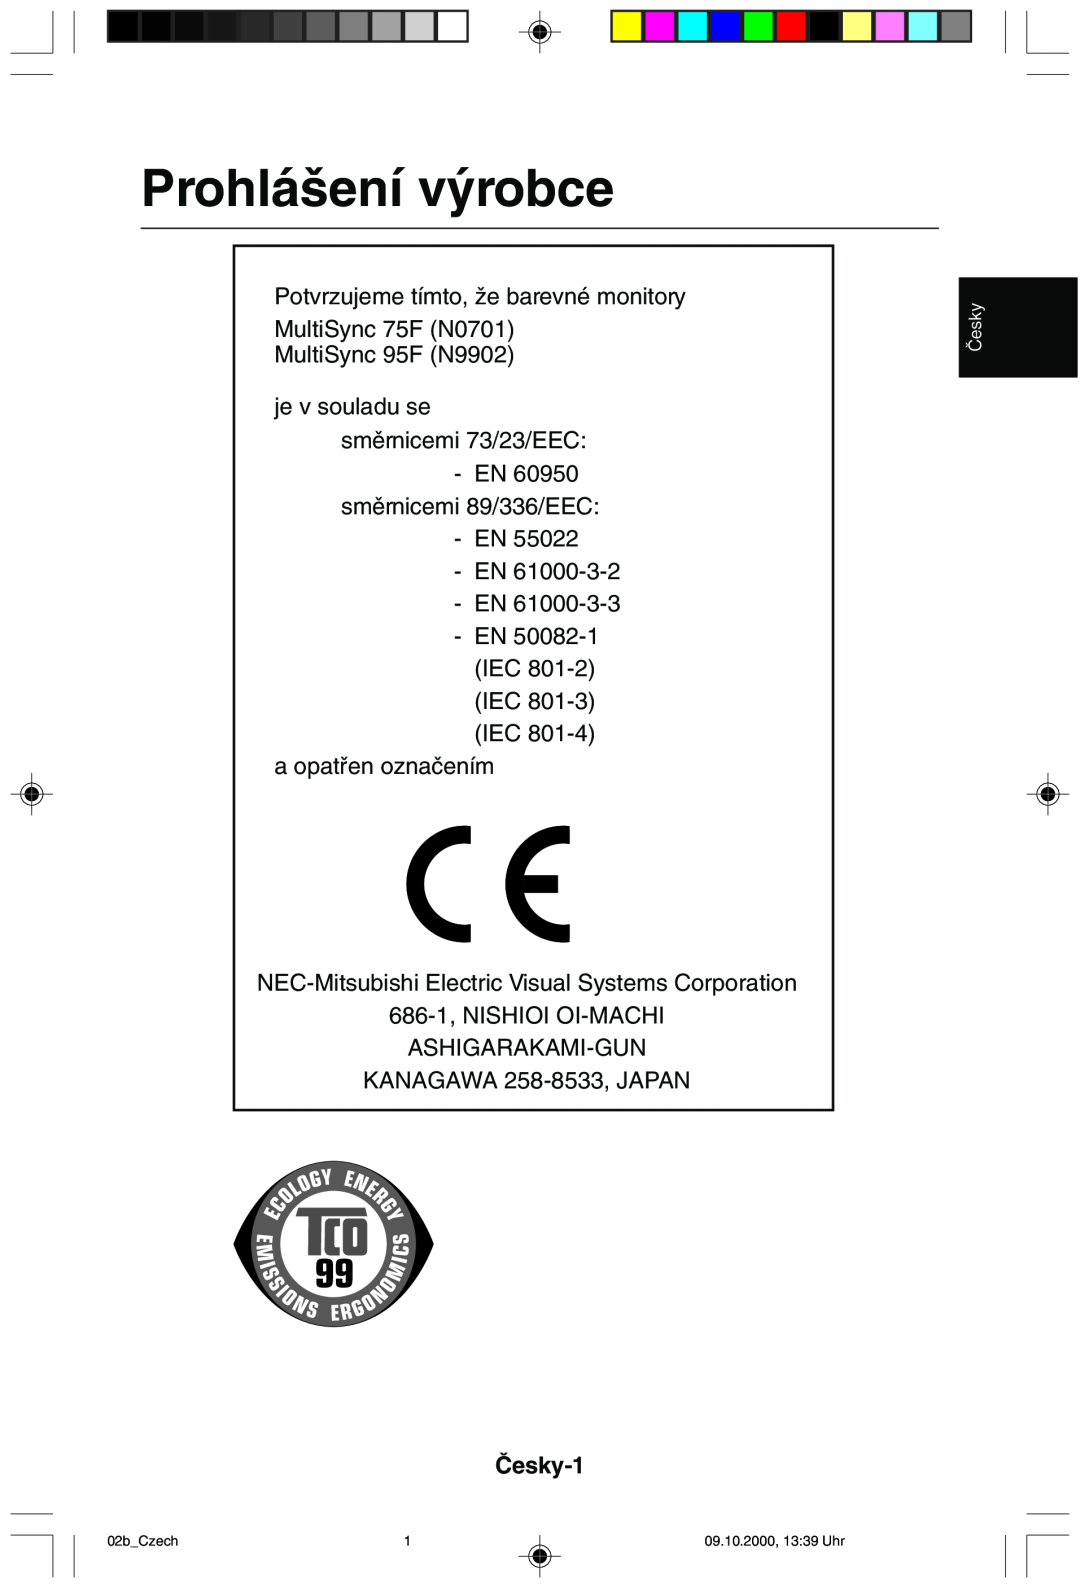 NEC 95F user manual Prohlá‰ení v˘robce, âesky-1, 02bCzech, 09.10.2000, 1339 Uhr 